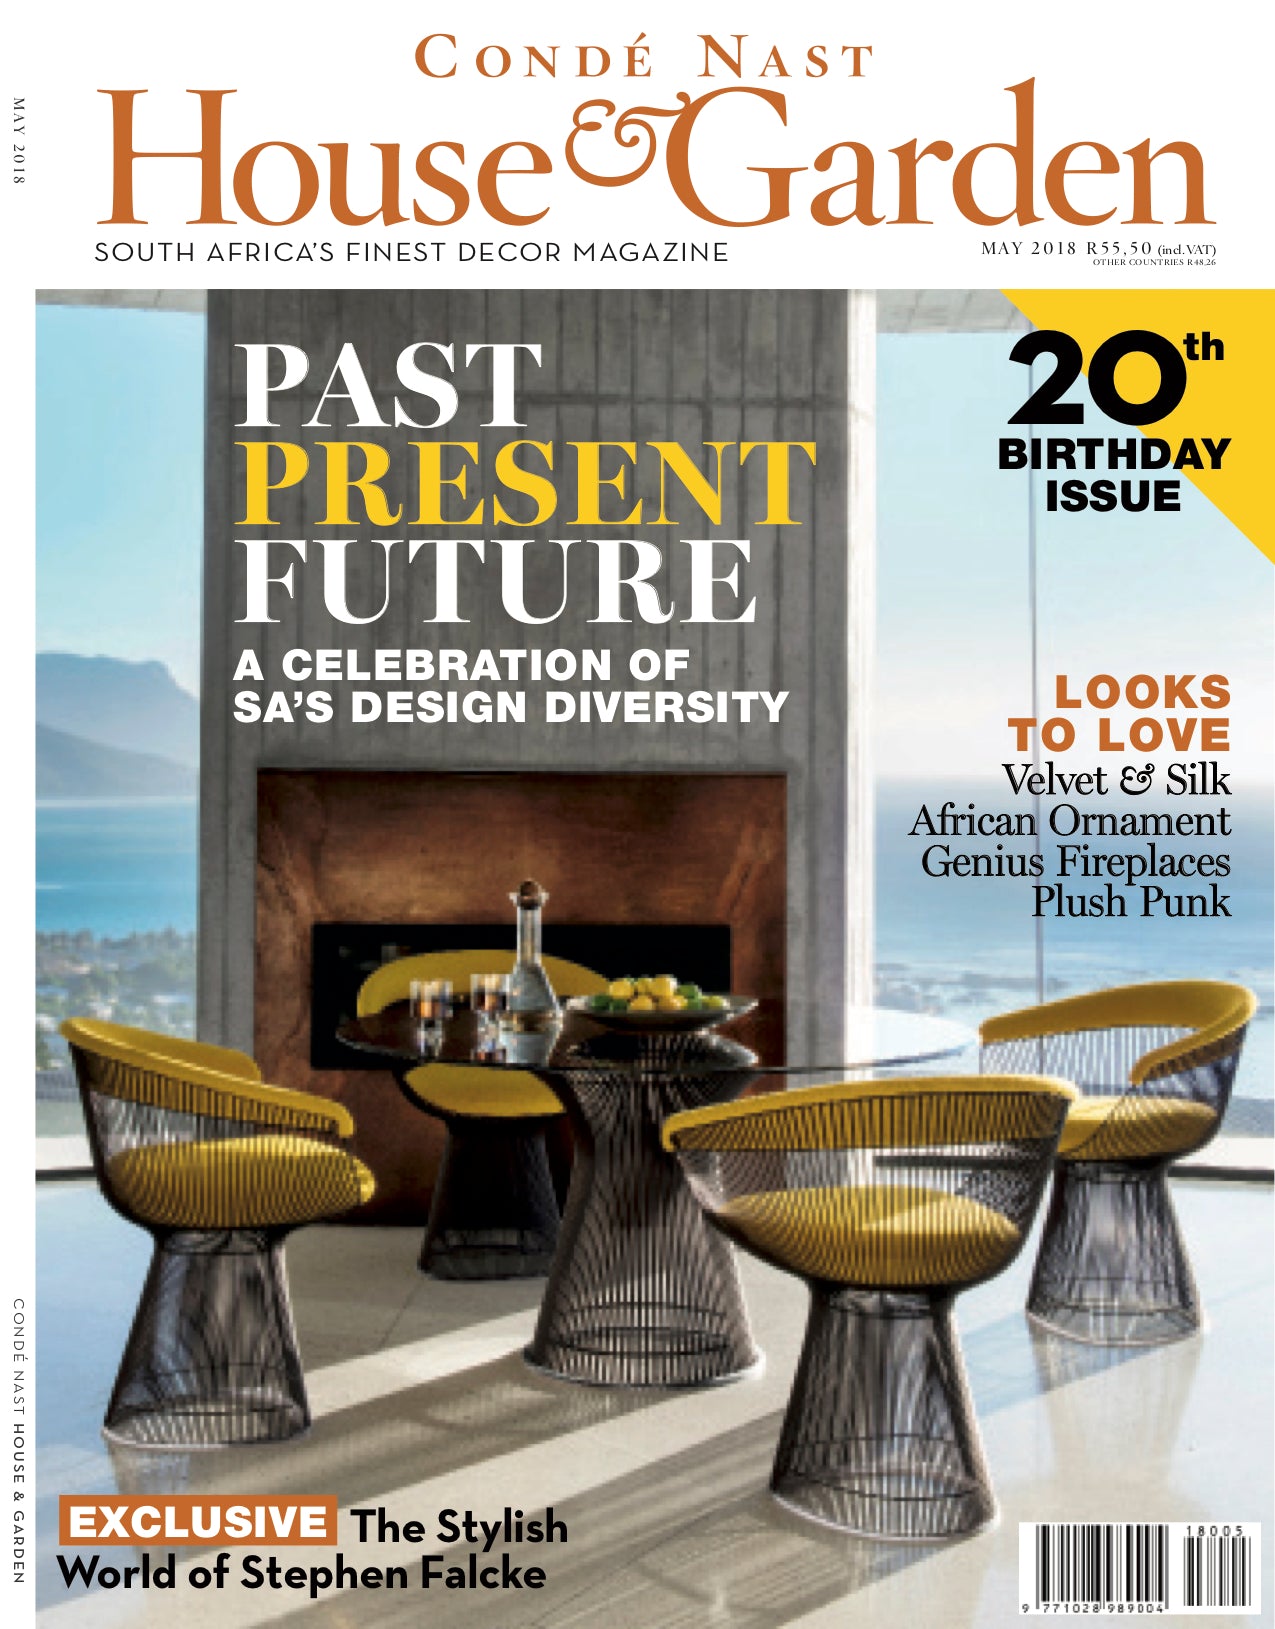 HOUSE & GARDEN 20TH BIRTHDAY ISSUE